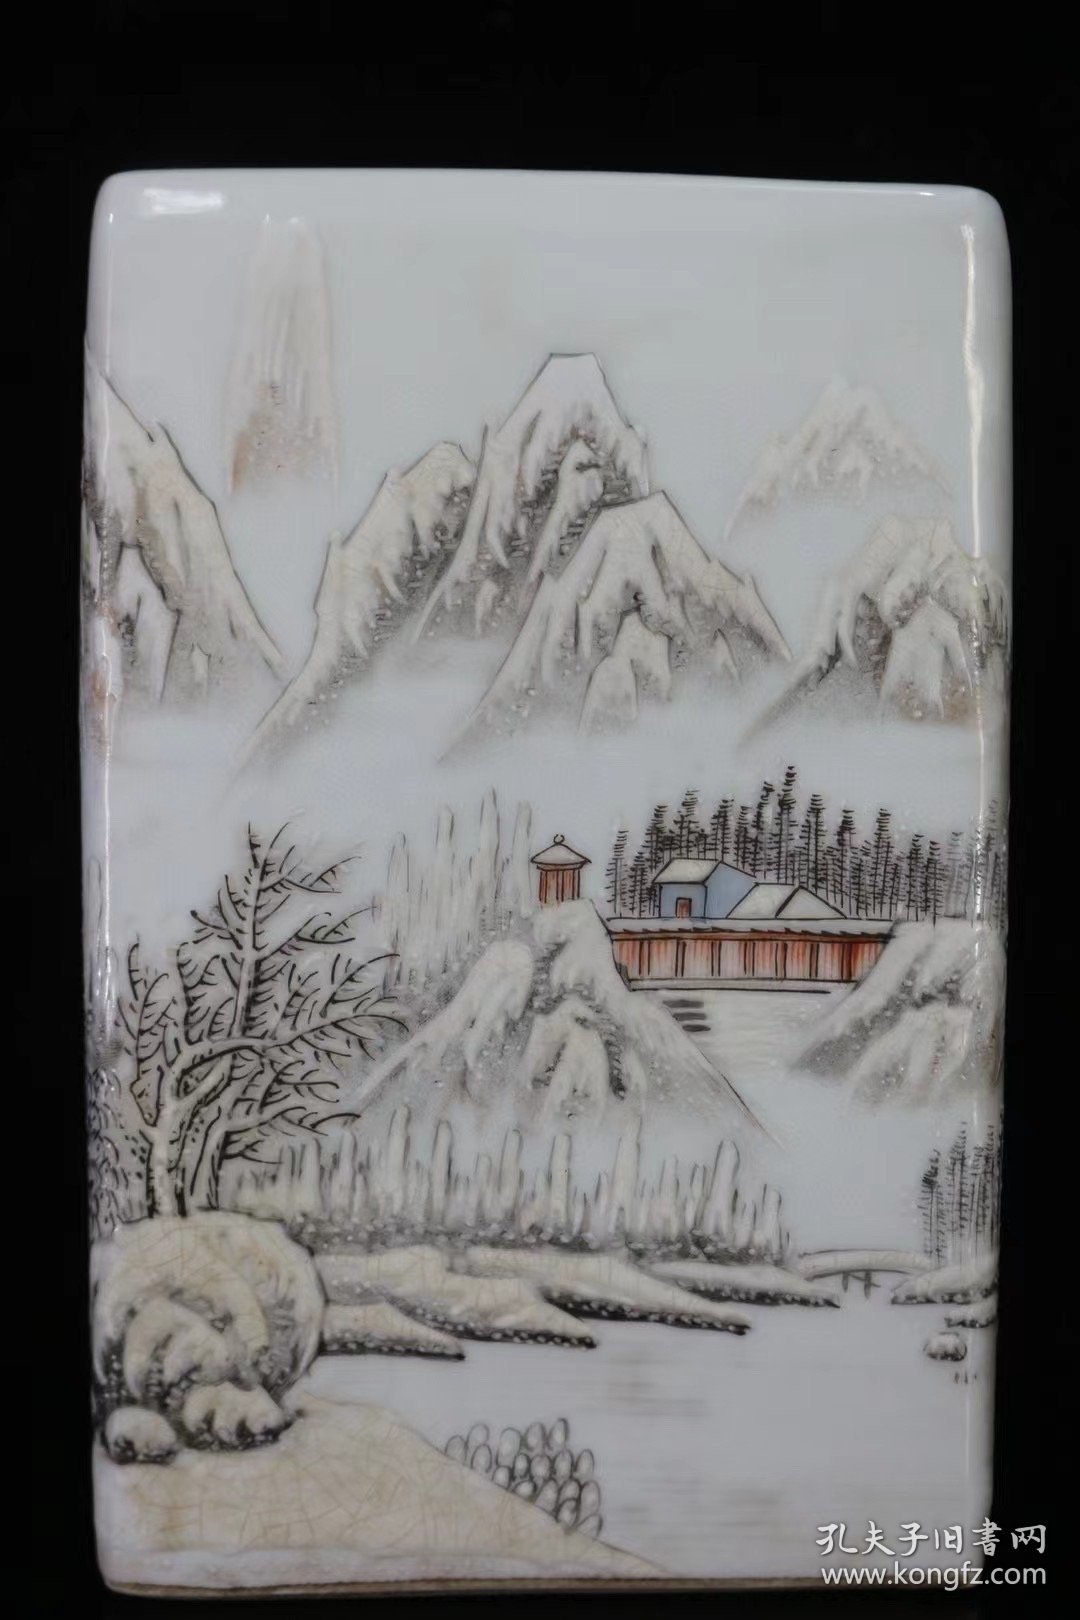 瓷器，竹山八友何许人作粉彩溪山积雪雪景笔筒，
宽13.6厘米高21.3厘米，，
编号9600k810775